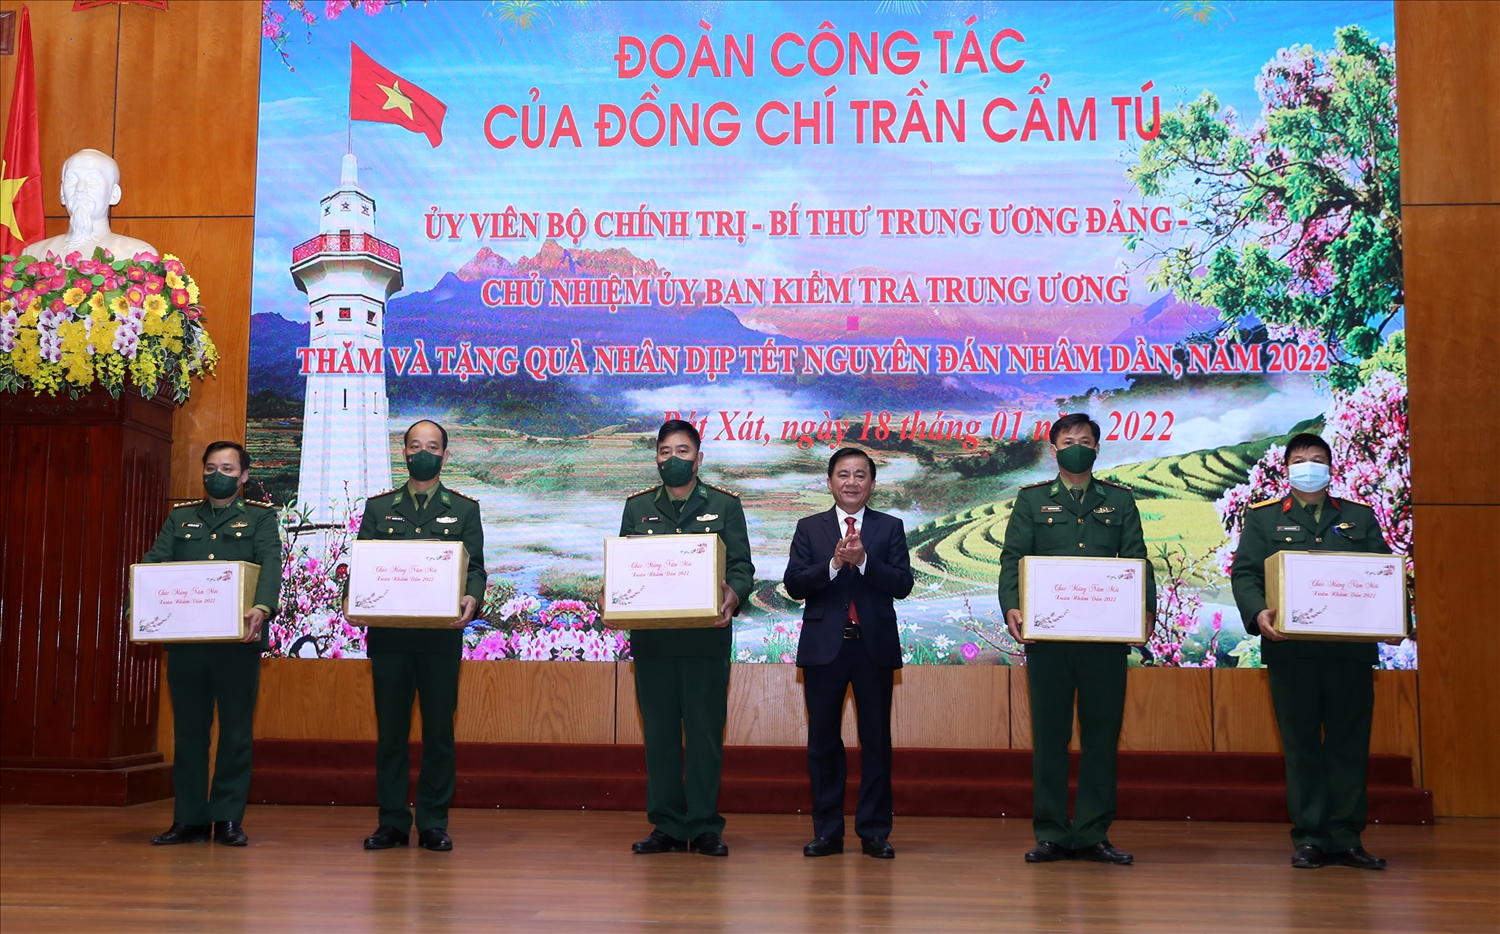 Đồng chí Trần Cẩm Tú tặng quà Tết cho lực lượng vũ trang và Nhân dân trên địa bàn huyện Bát Xát